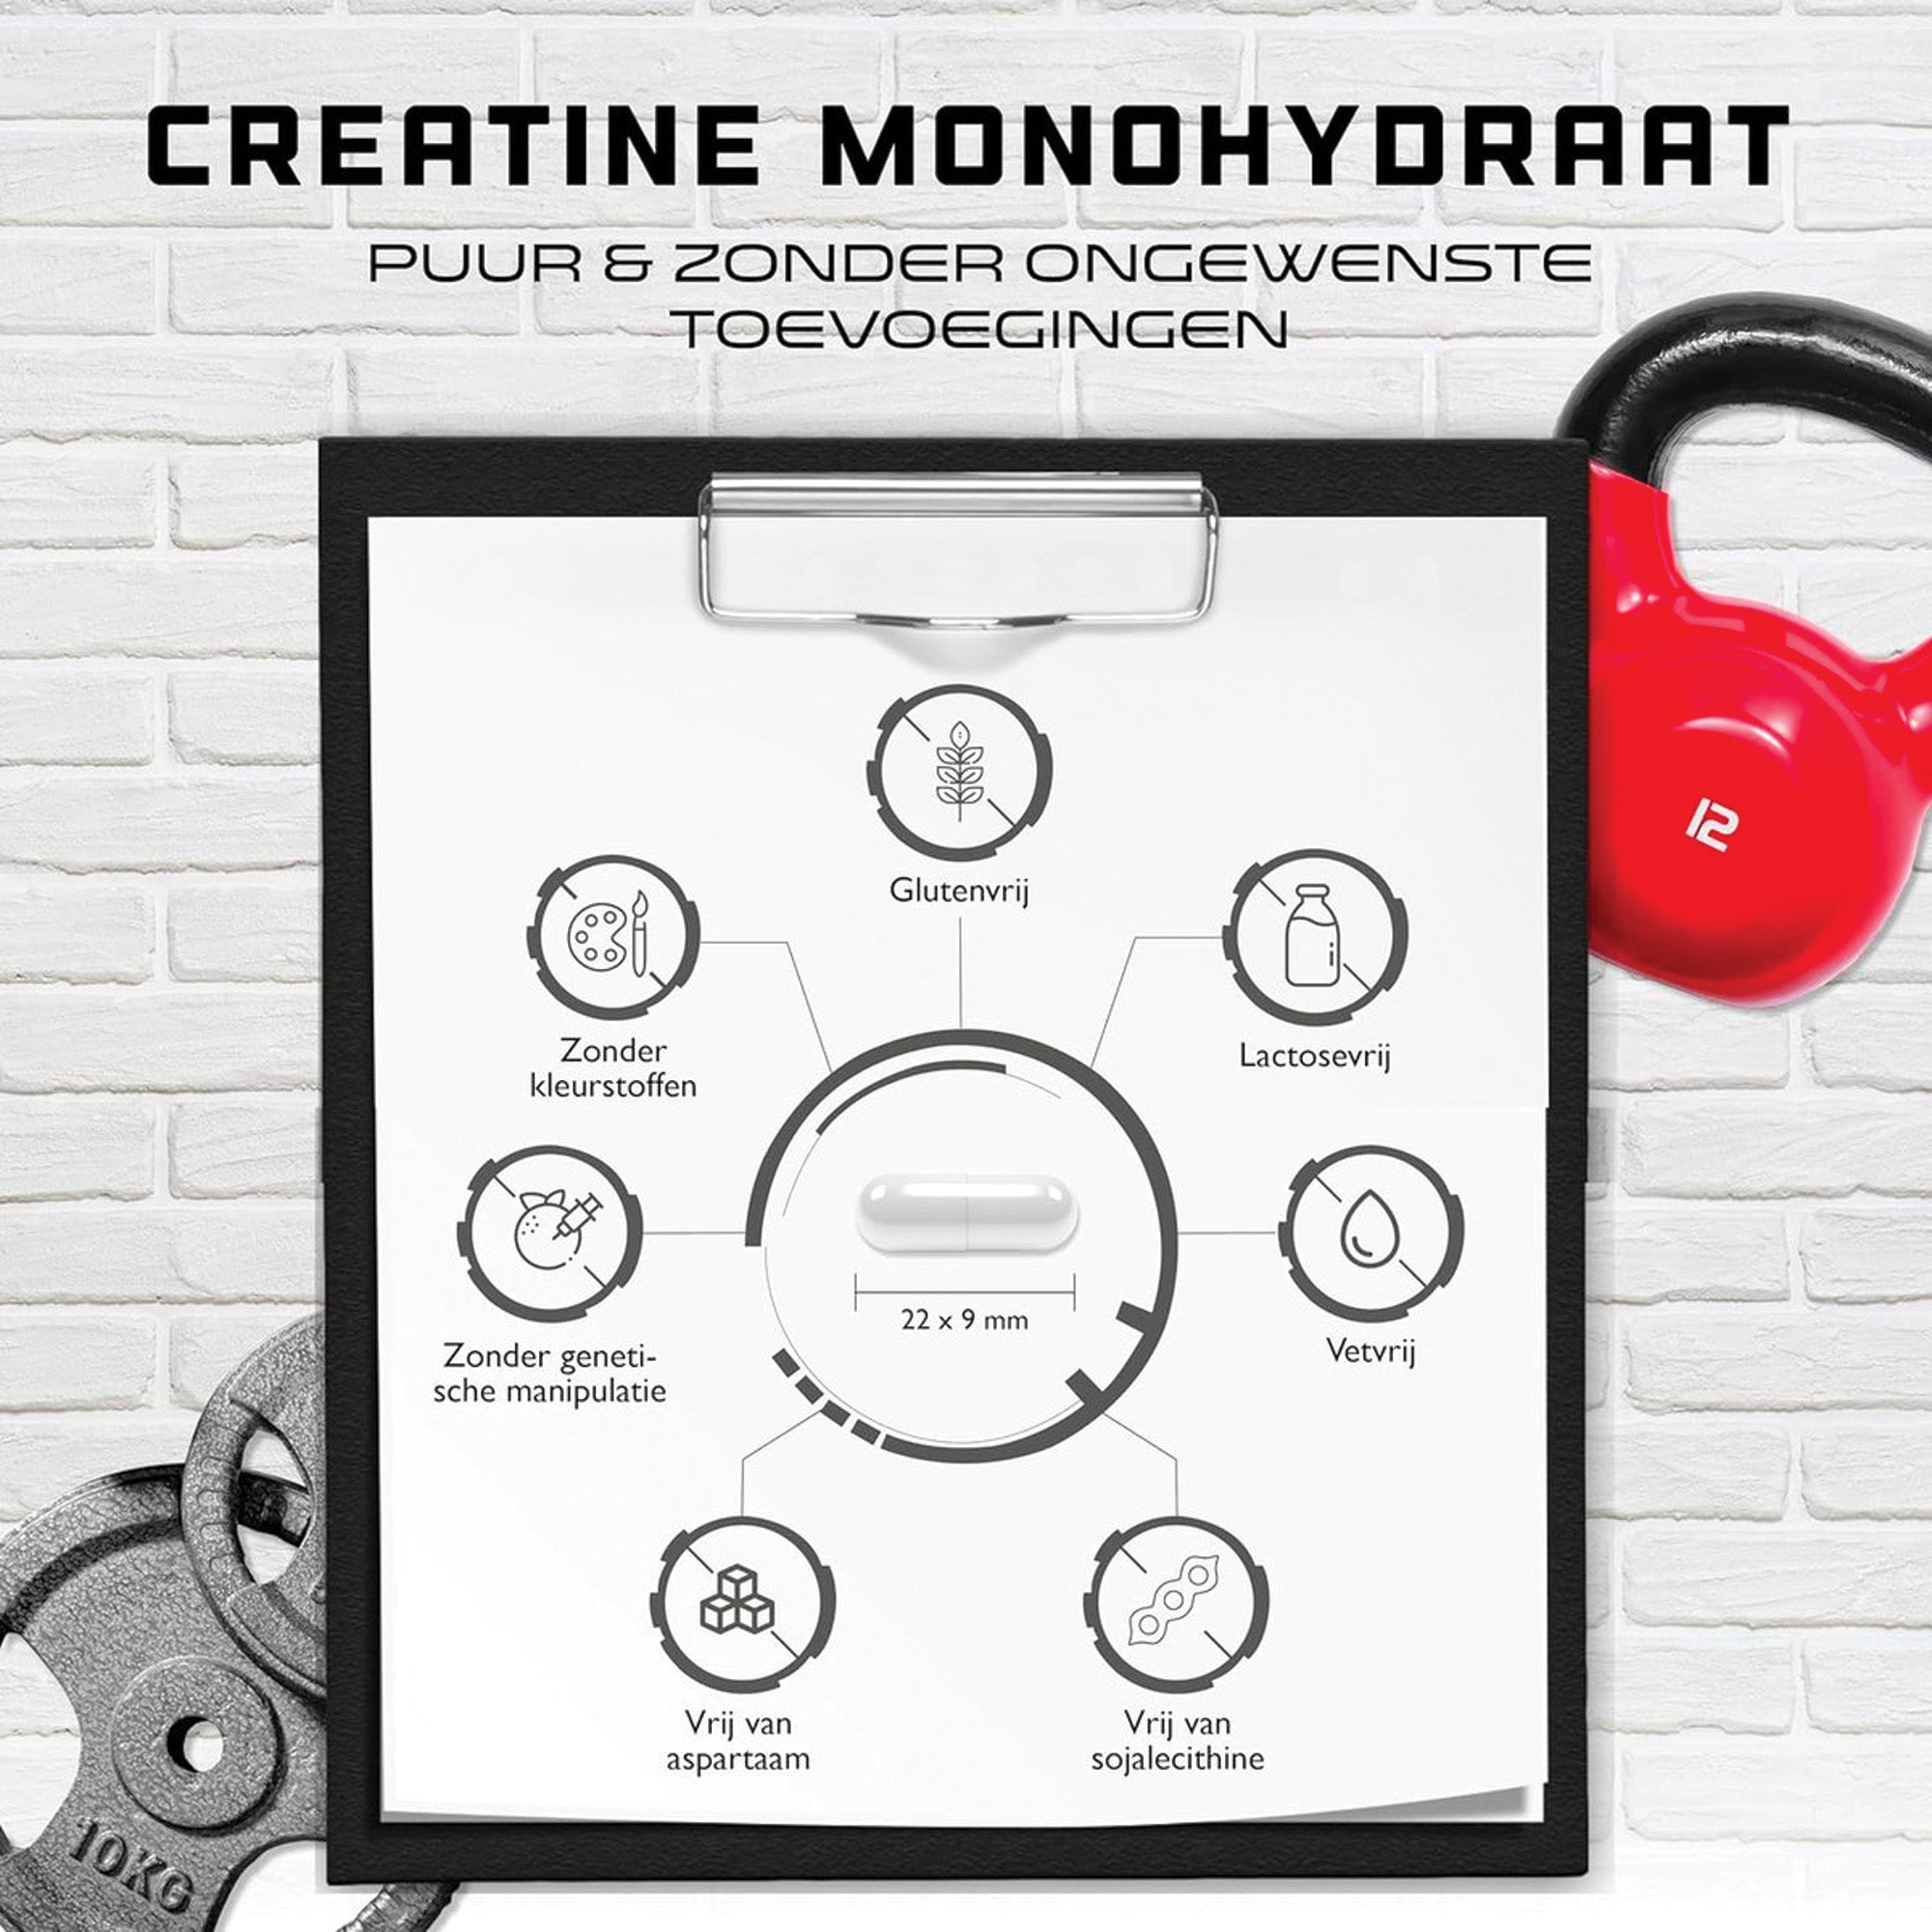 Creatine Ultra Caps | 180 capsules met elk 1250 mg puur creatine-monohydraat | Premium: Ultrazacht + Maasfactor van 200 | Hooggedoseerd